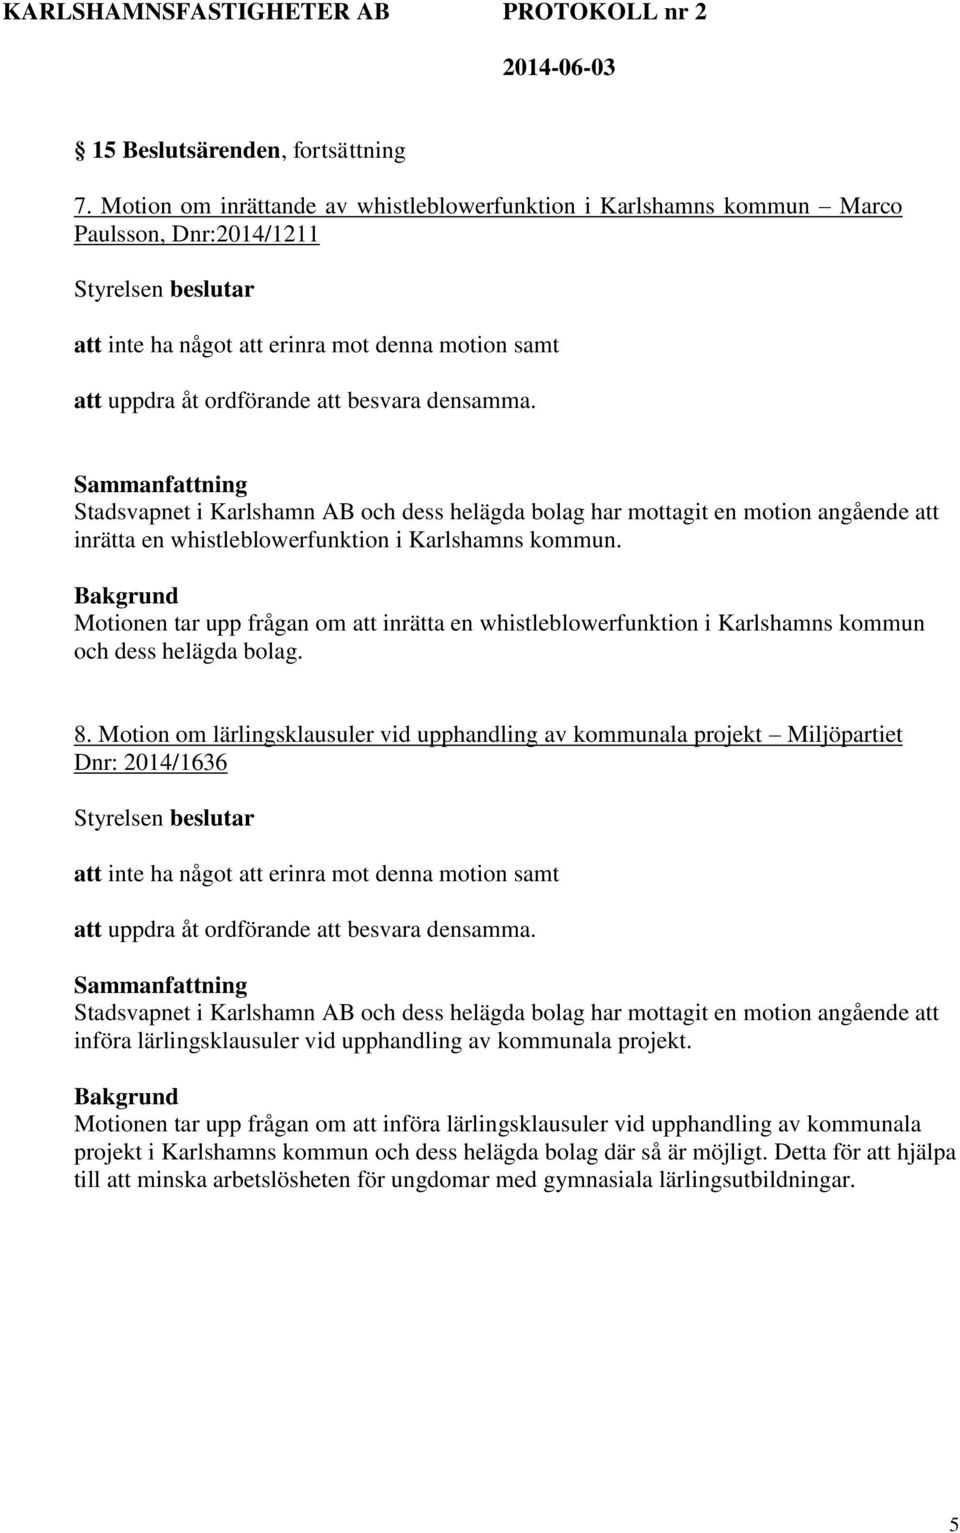 Stadsvapnet i Karlshamn AB och dess helägda bolag har mottagit en motion angående att inrätta en whistleblowerfunktion i Karlshamns kommun.